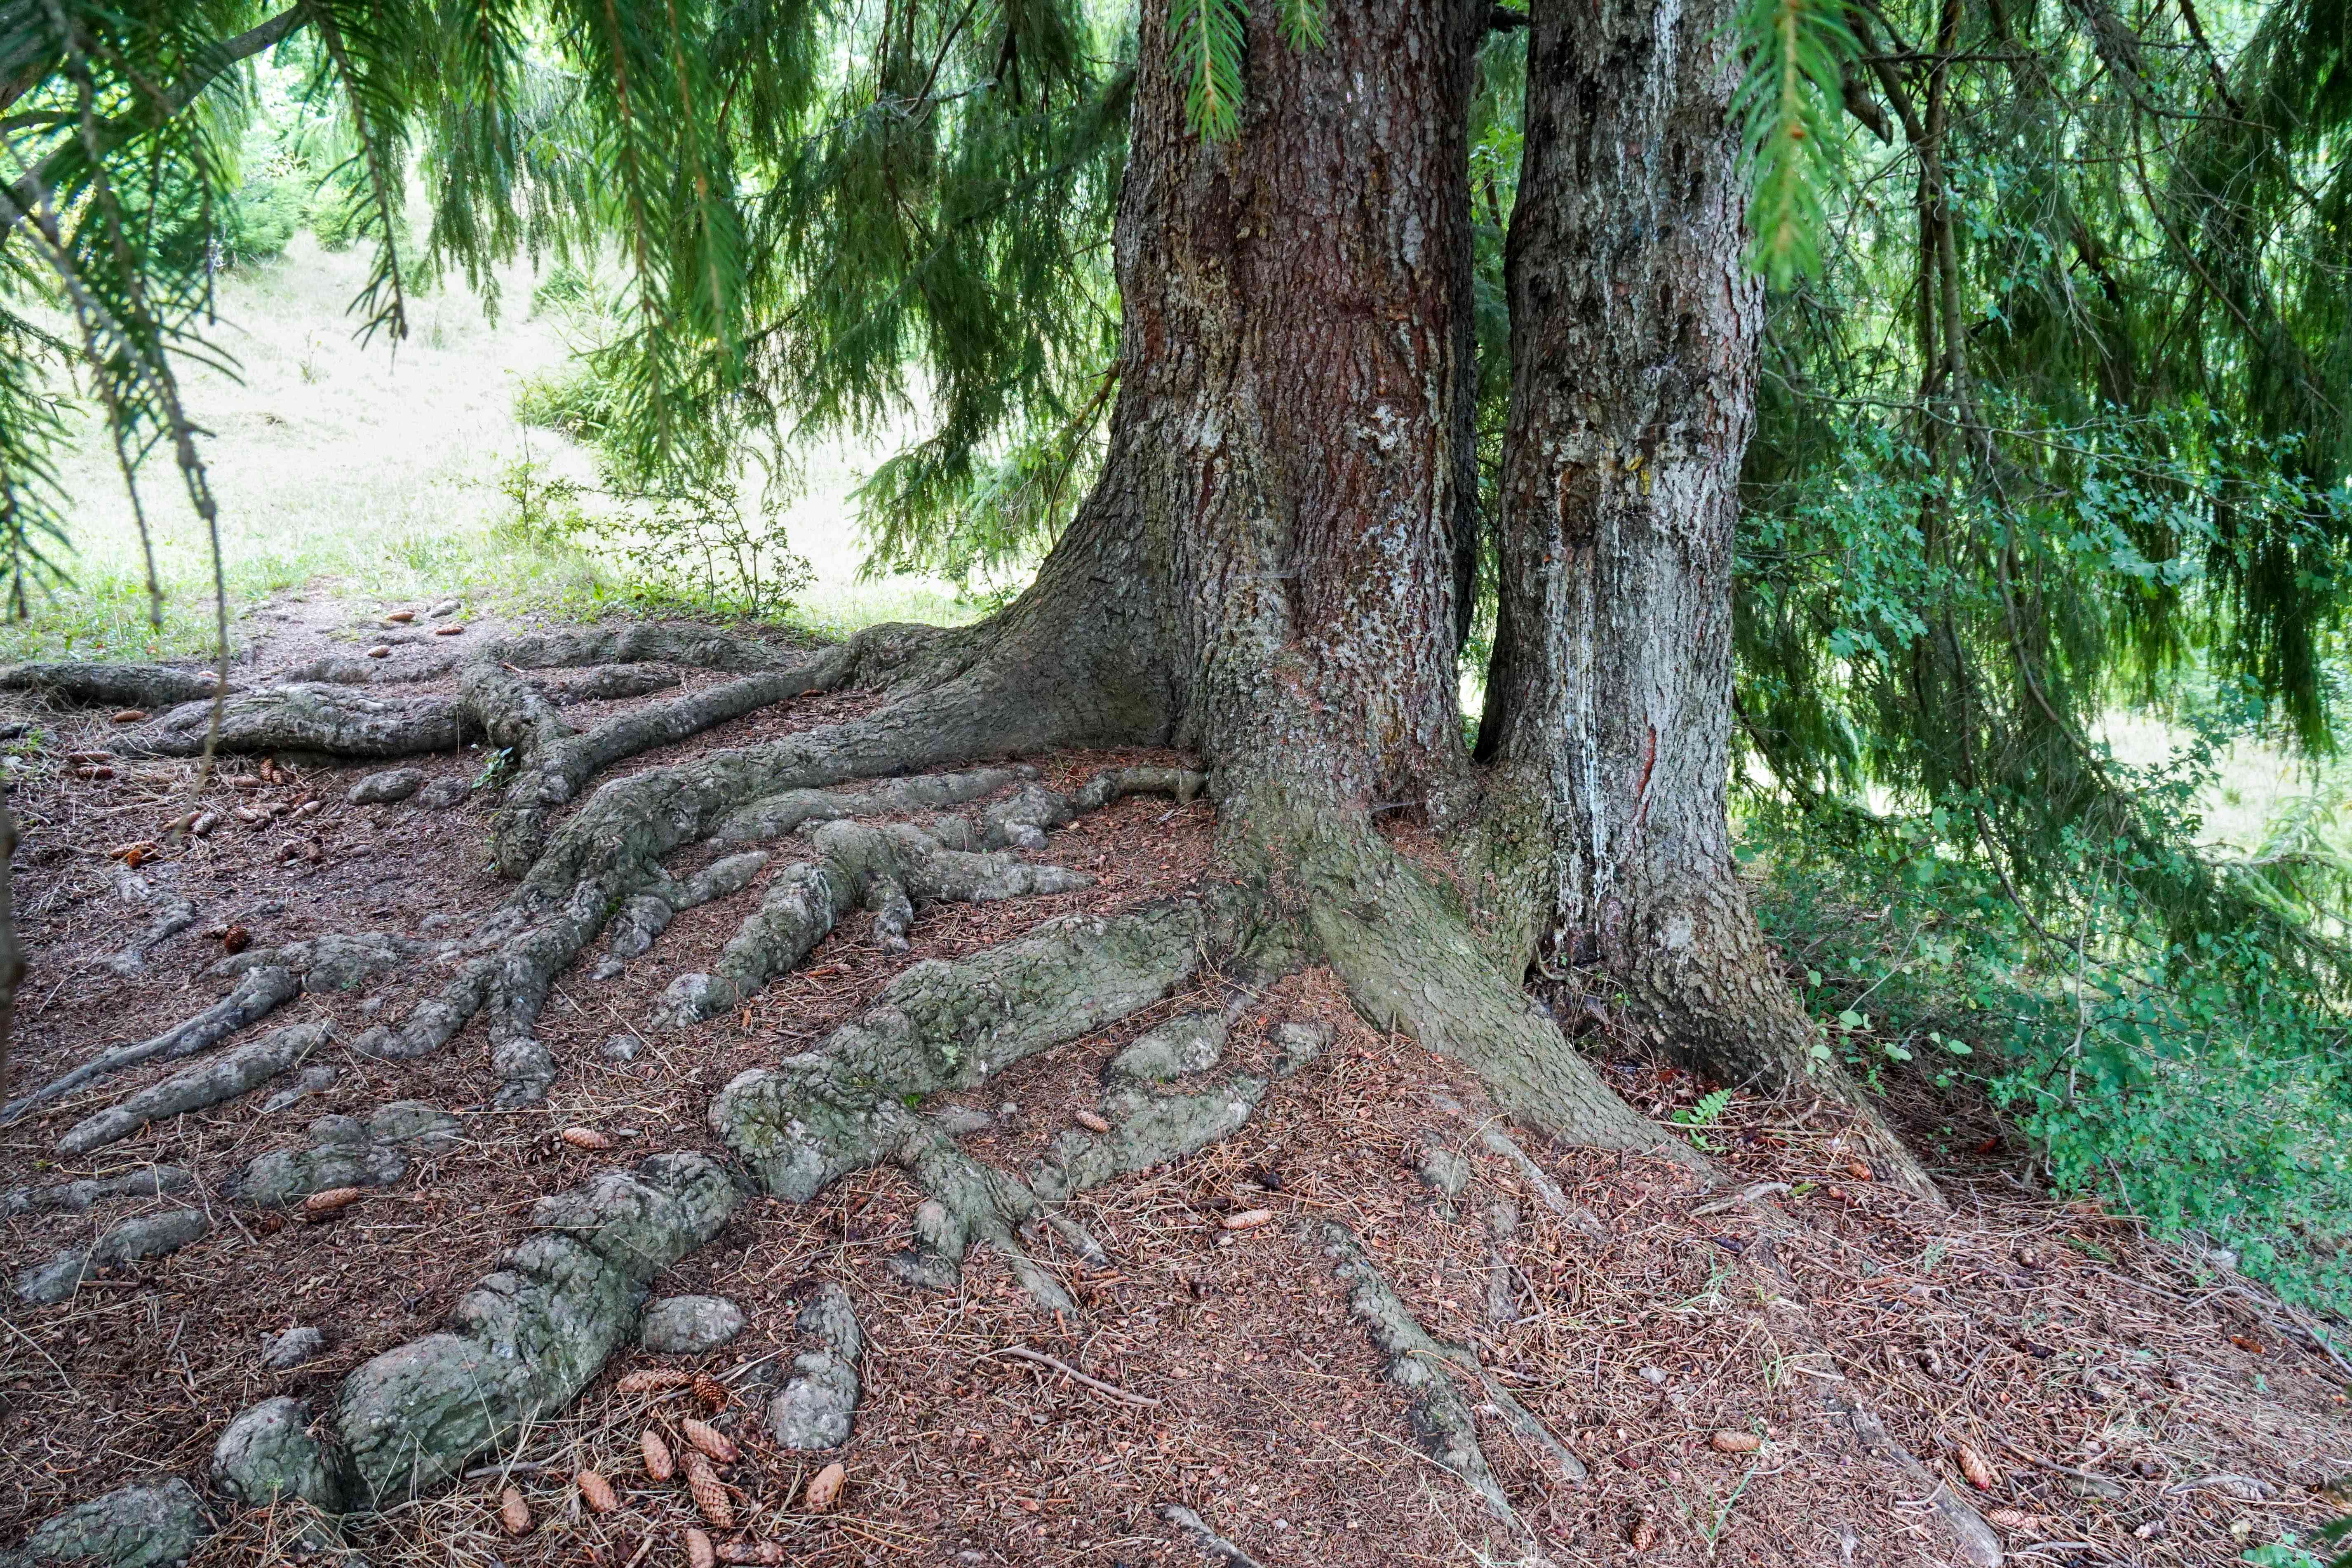 落叶树，带绿色的针叶和大厚的裸露根“width=